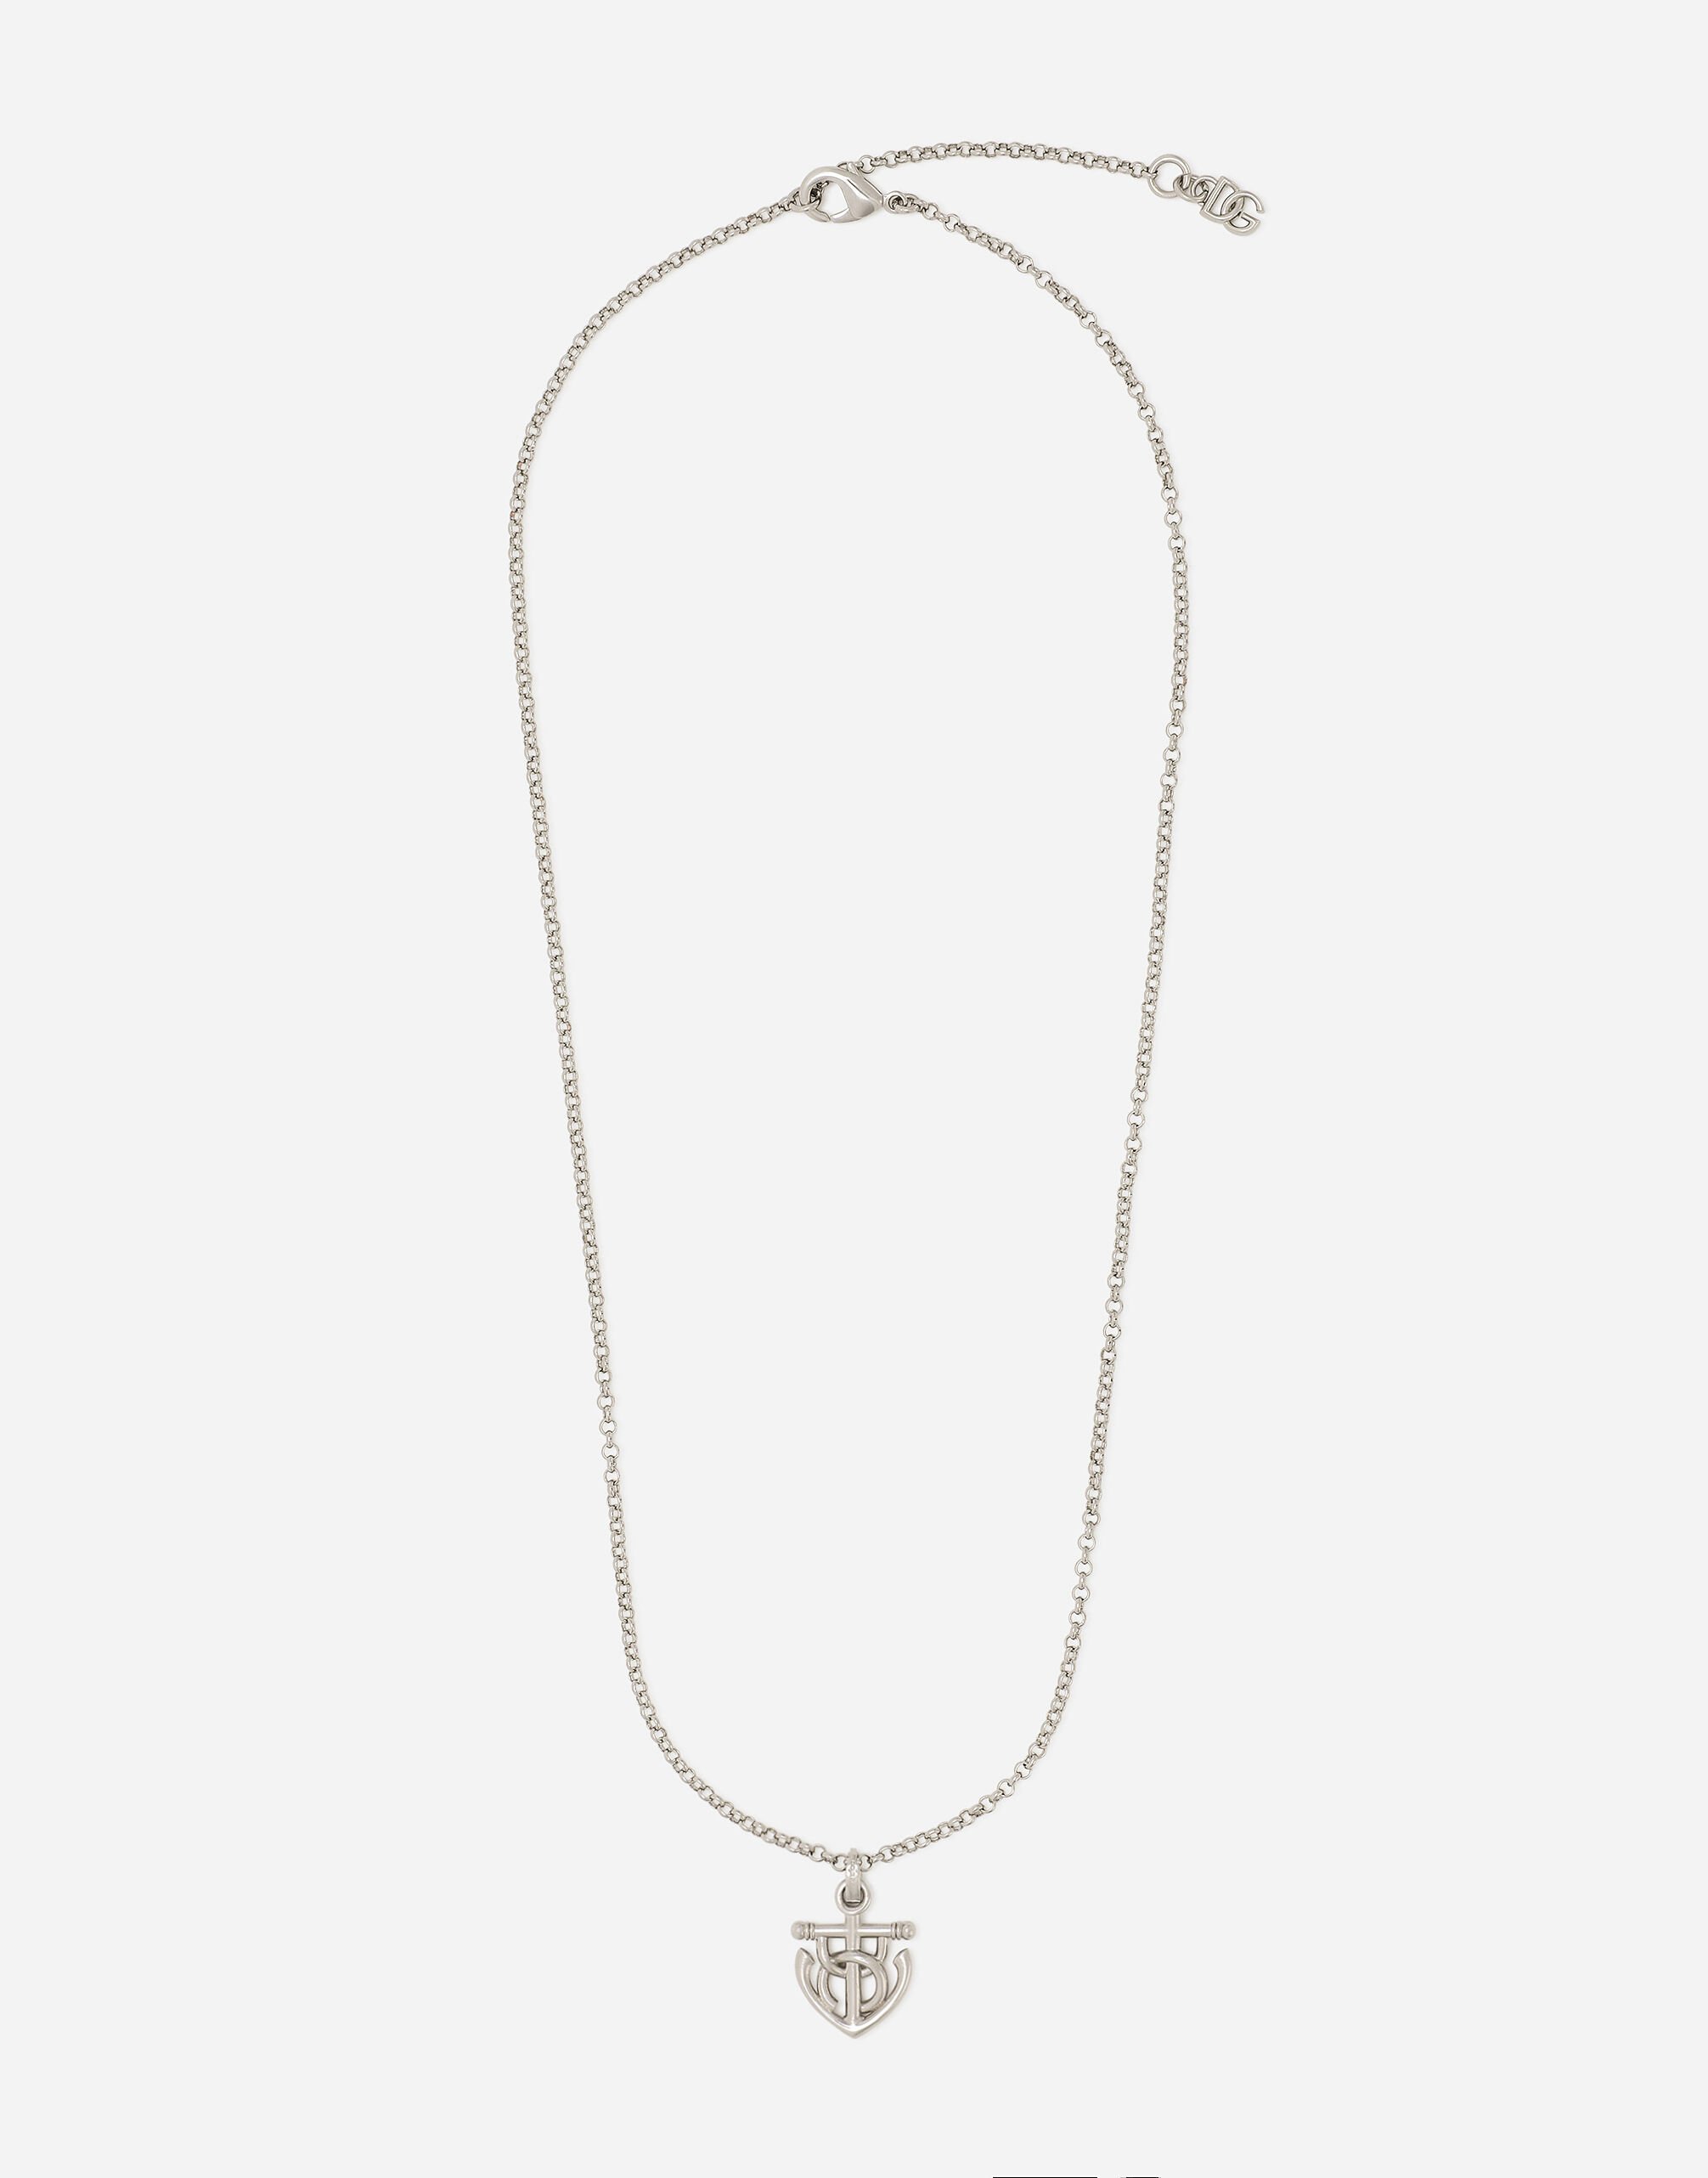 Dolce & Gabbana “Marina” anchor necklace Black BJ0820AP599